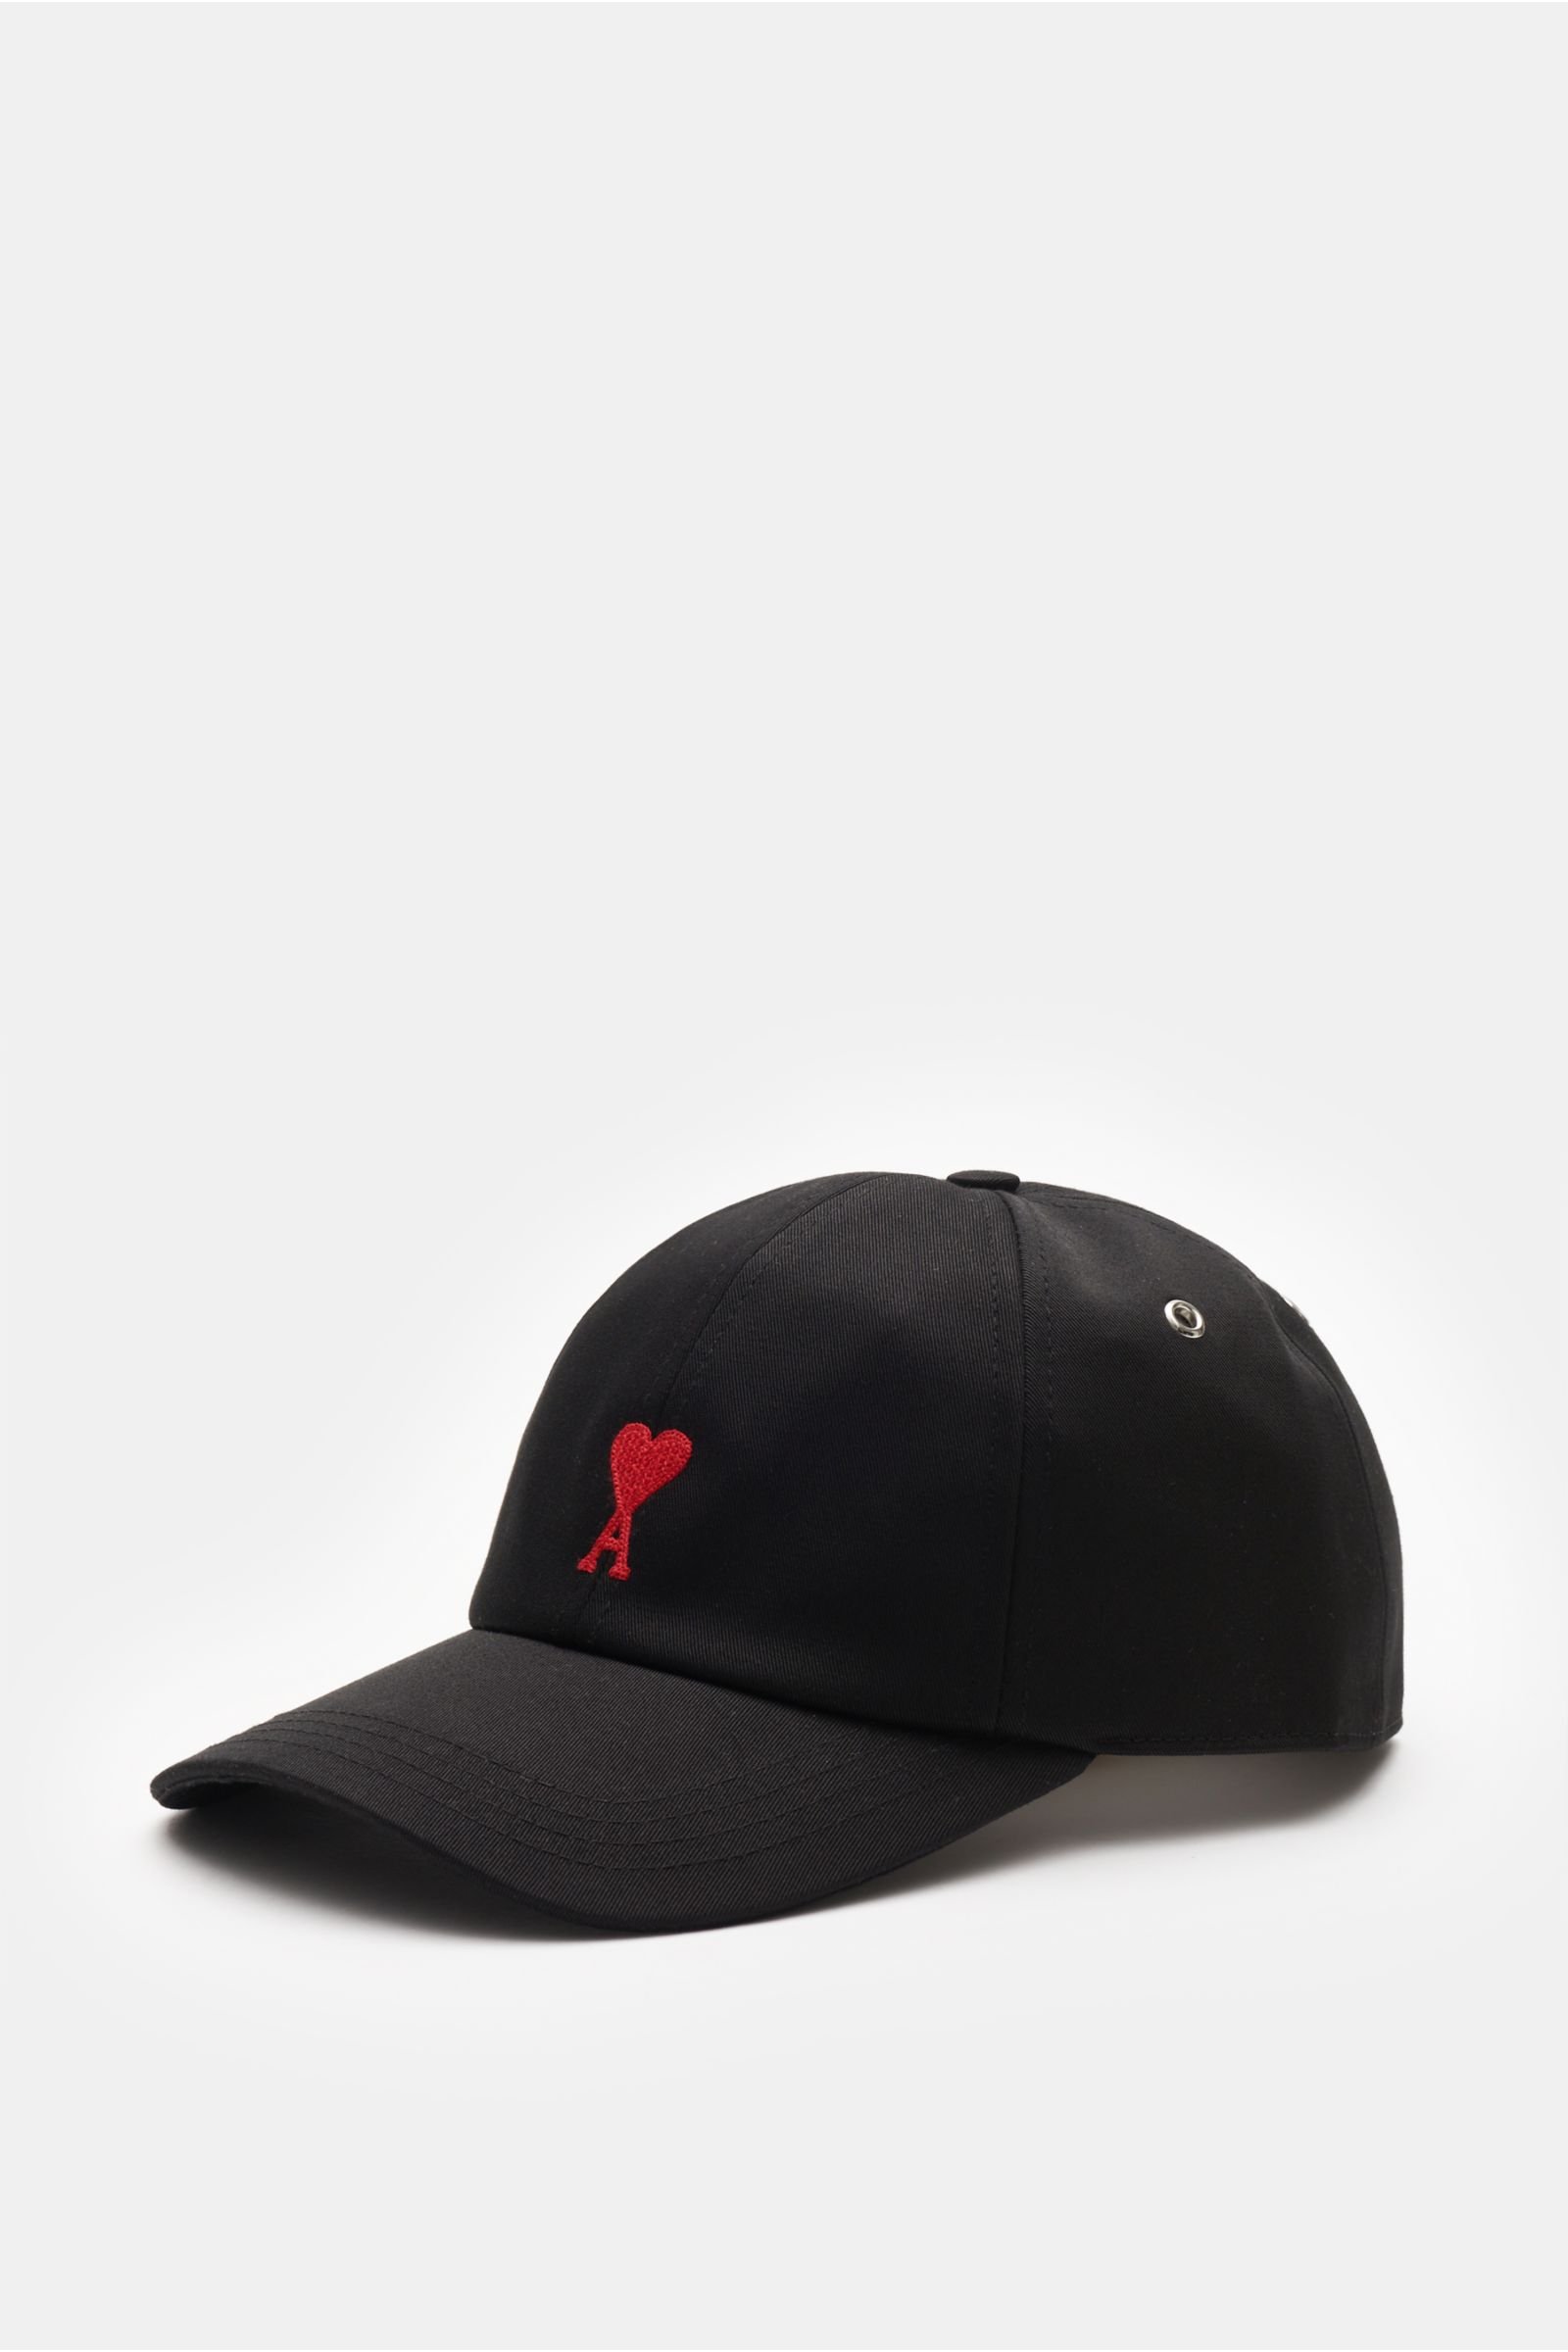 Baseball cap black 